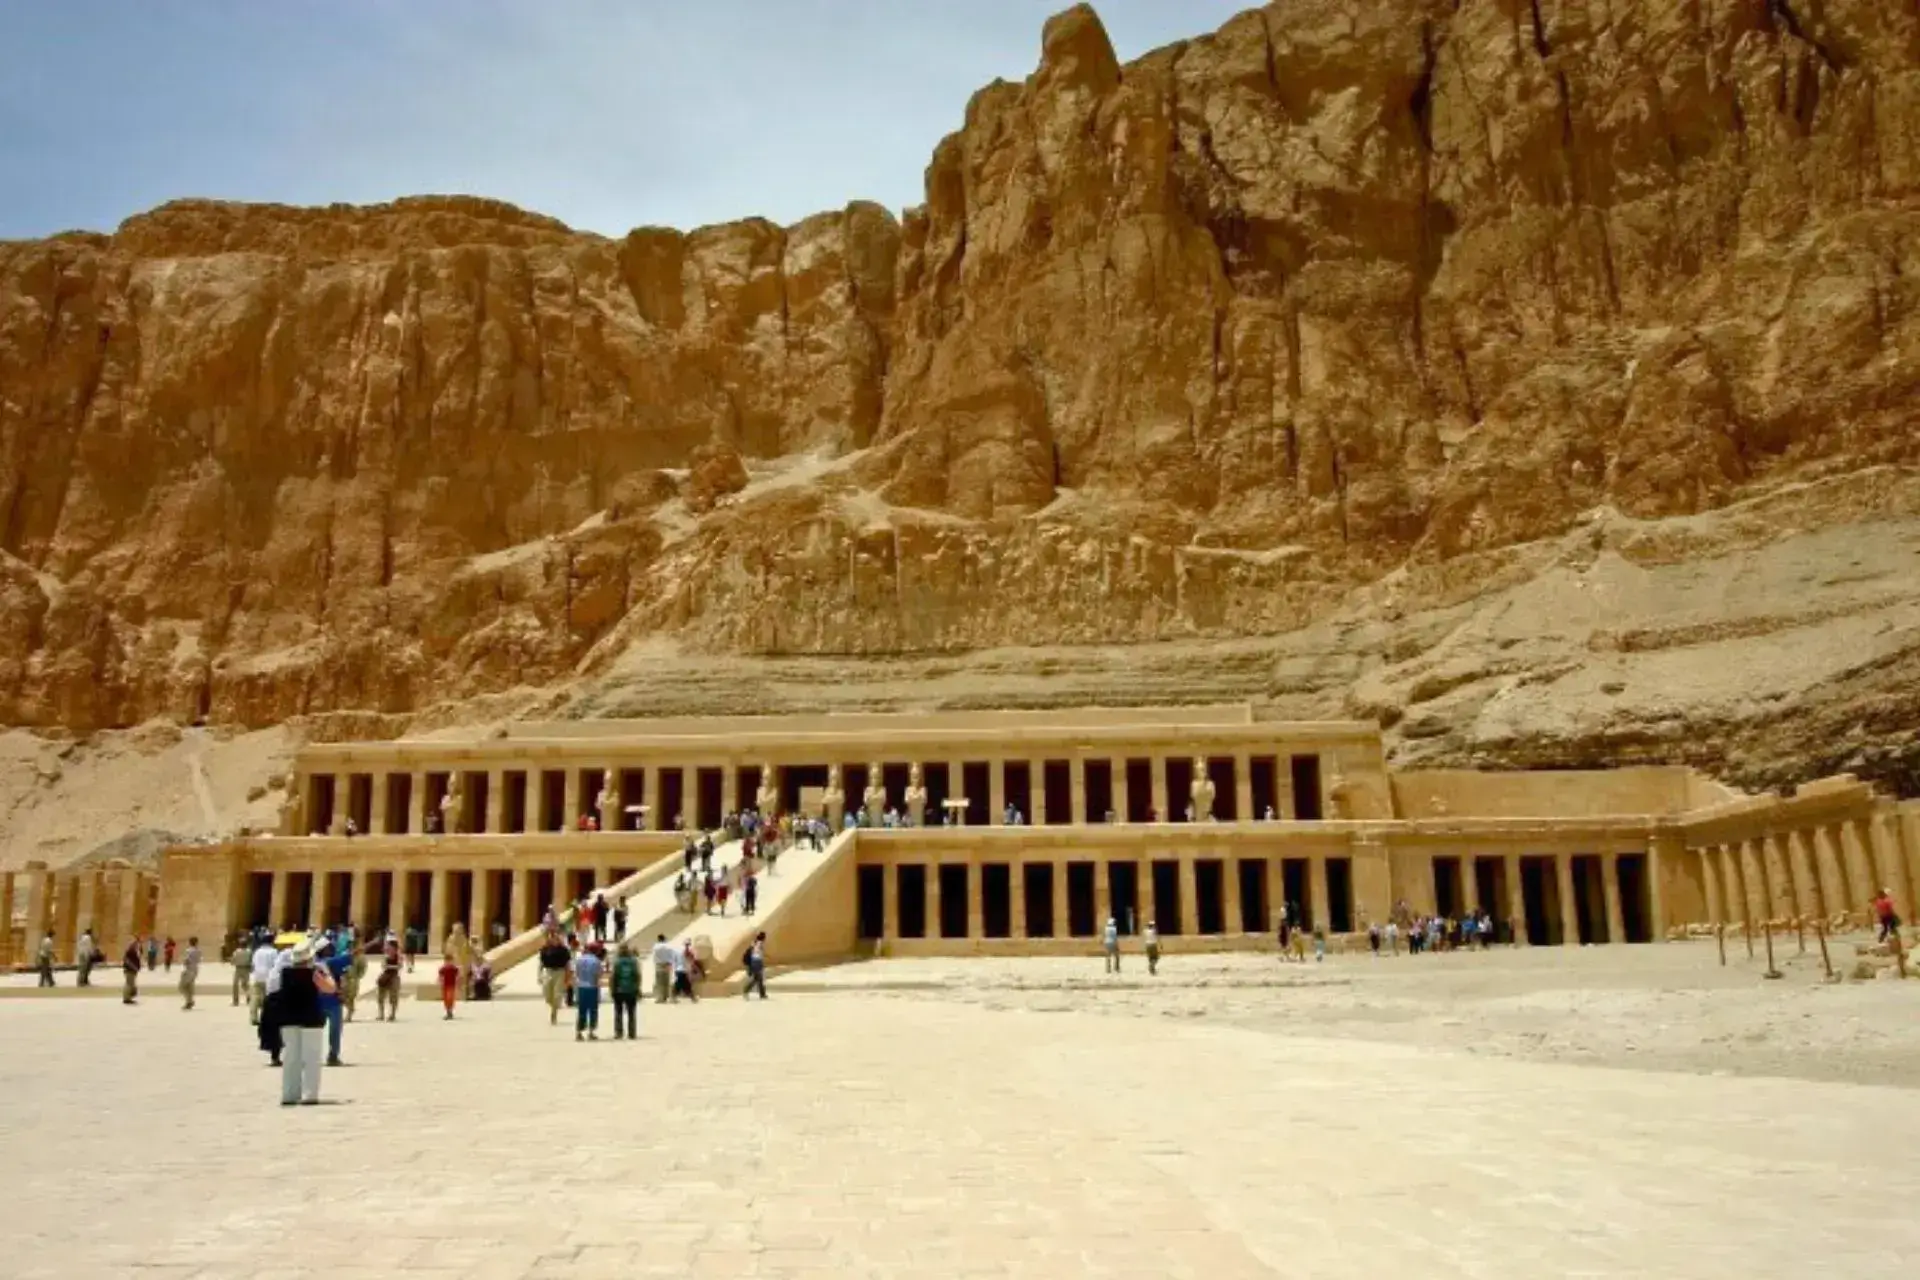 Vista panorámica del Templo funerario de Hatshepsut en Luxor